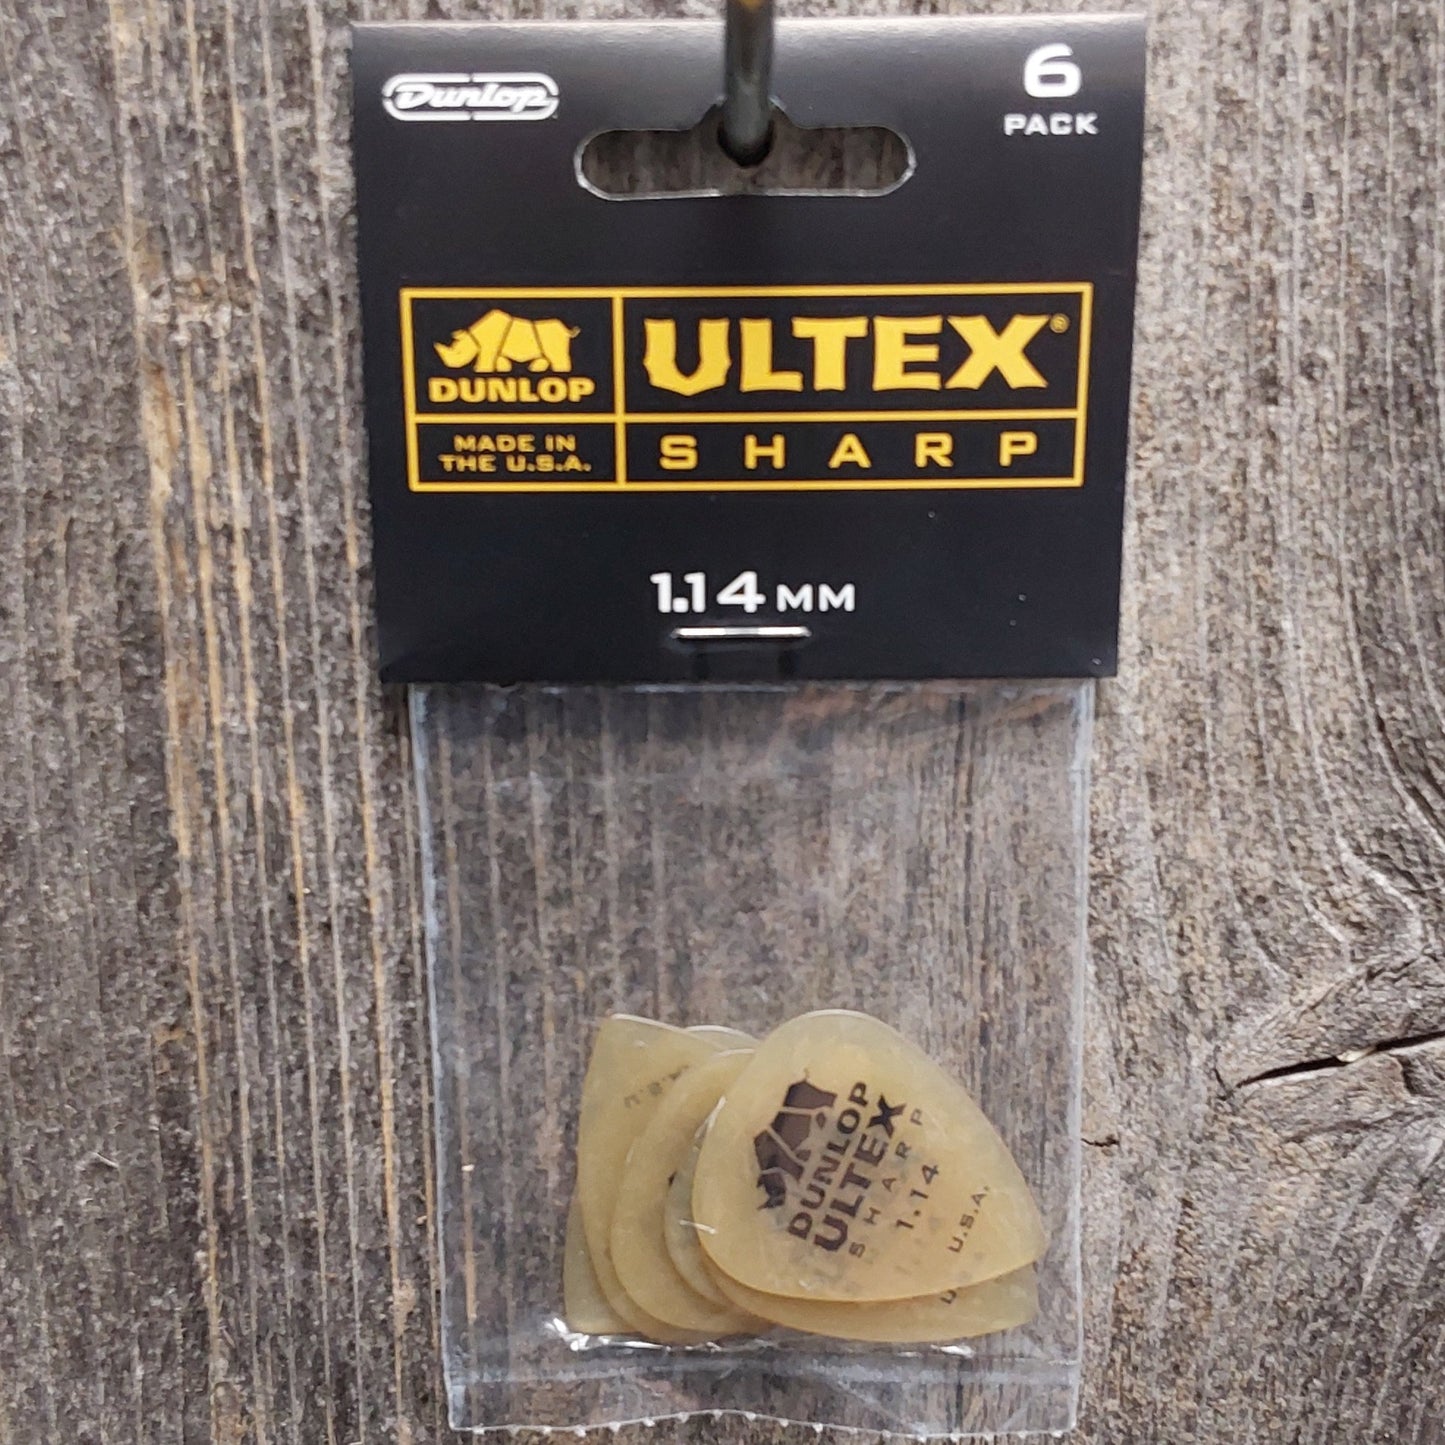 Dunlop 433P114 Ultex Sharp 1.14mm Players Pack (6 picks)